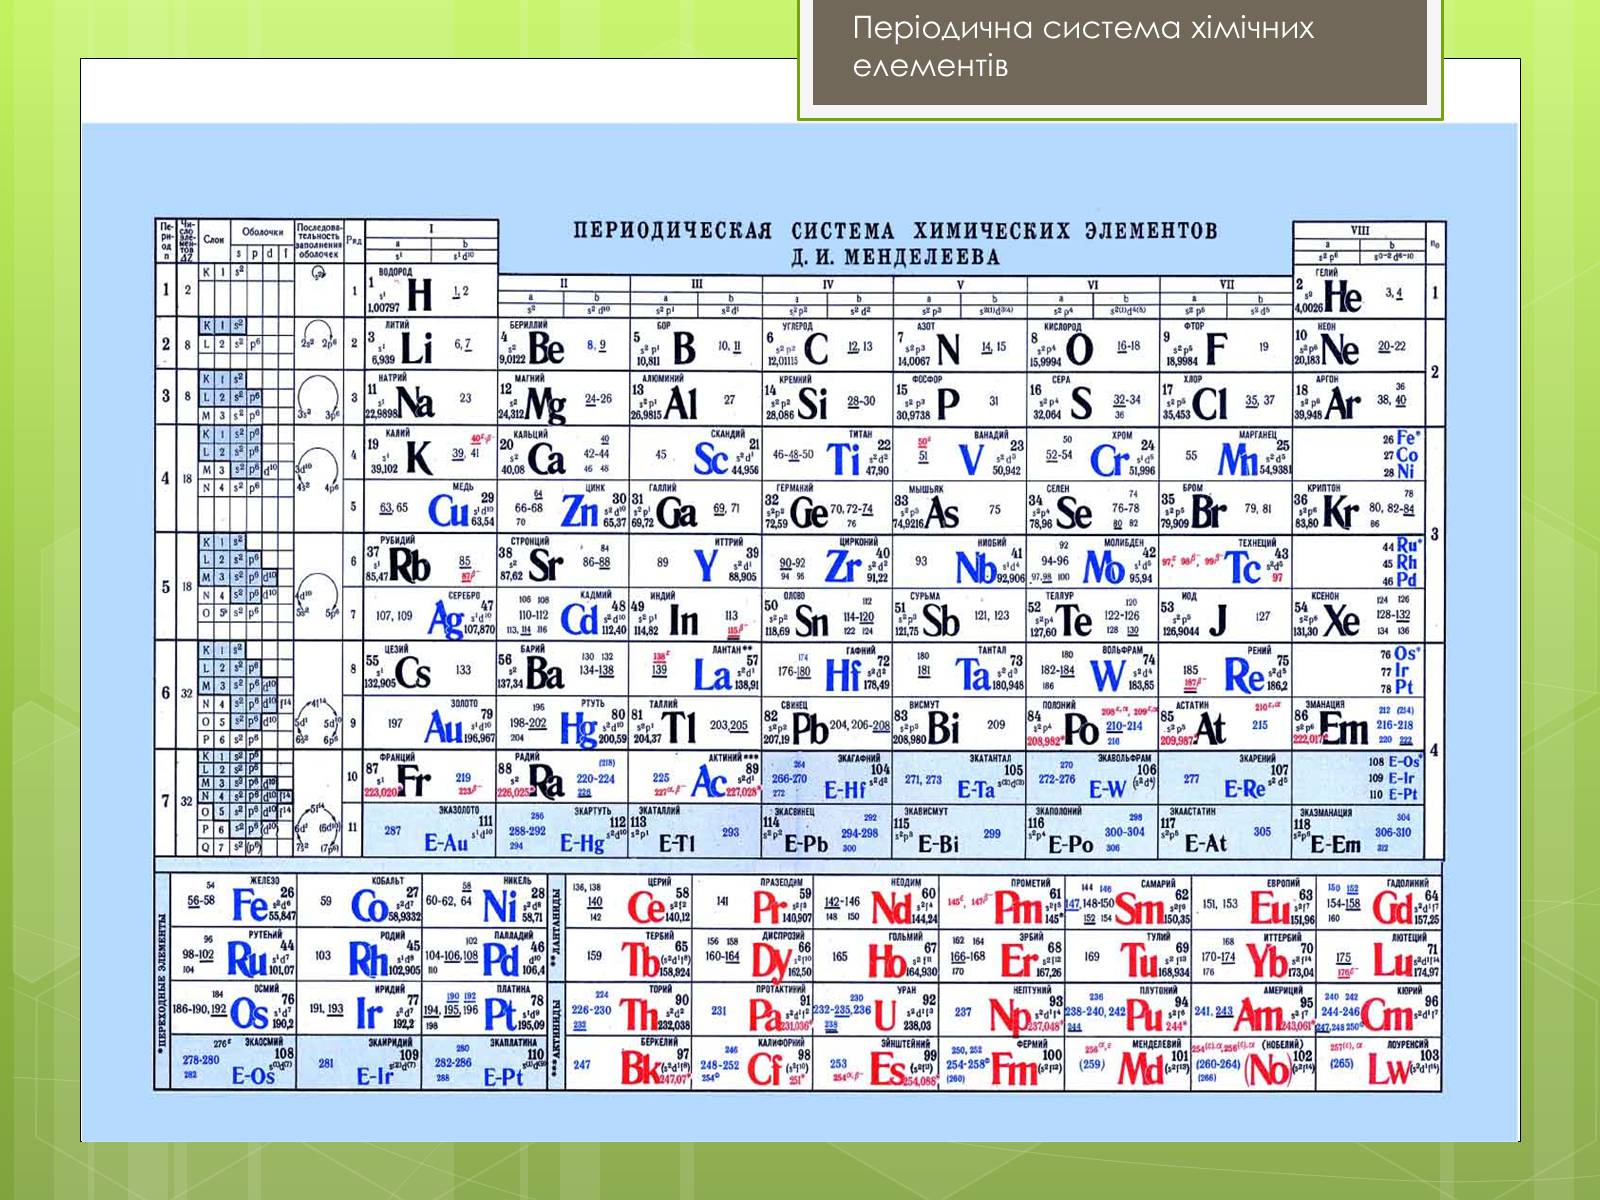 C название элемента. Периодическая система элементов д.и Менделеева. Таблица Менделеева 118 элементов. Таблица периодическая система химических элементов д.и.Менделеева. Таблица Менделеева с орбиталями.